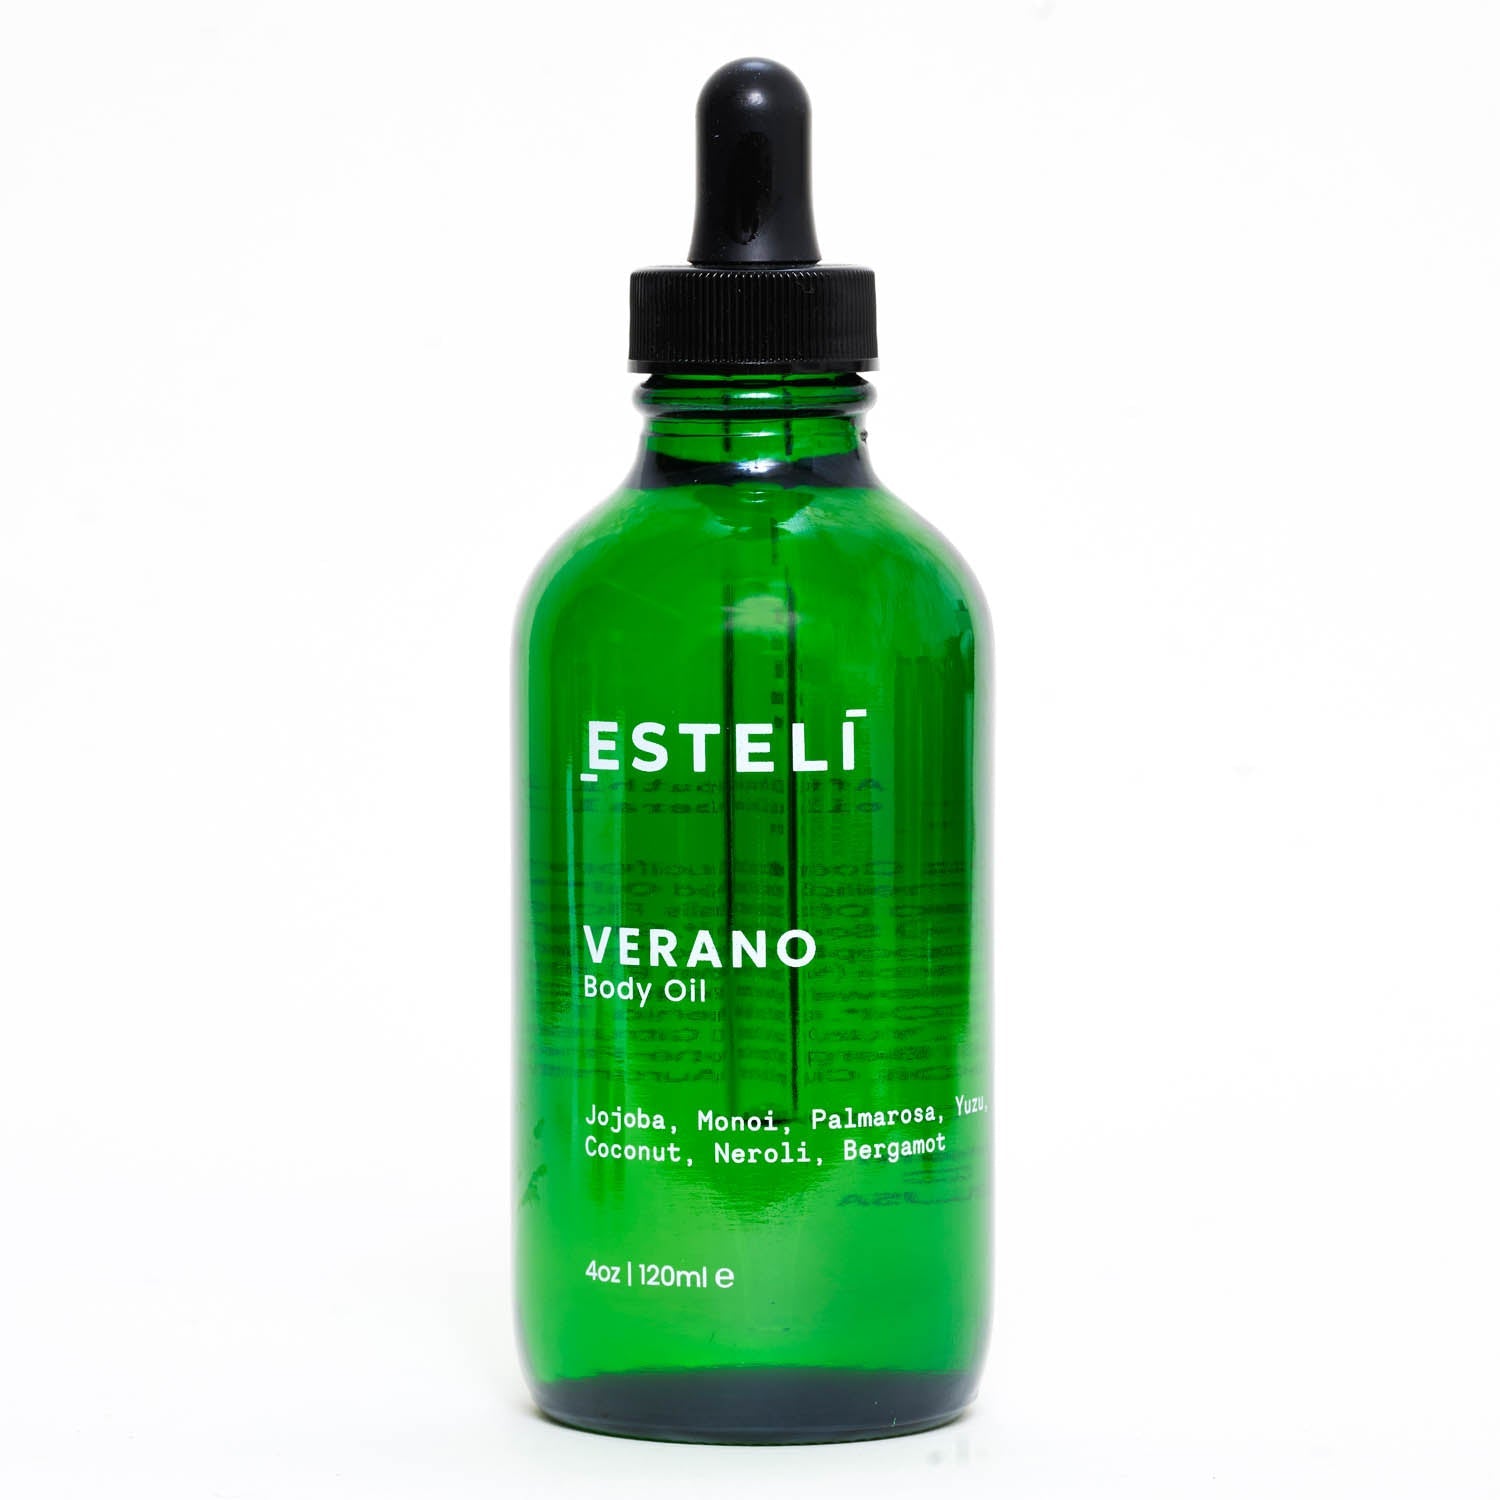 Esteli Body: VERANO Body Oil